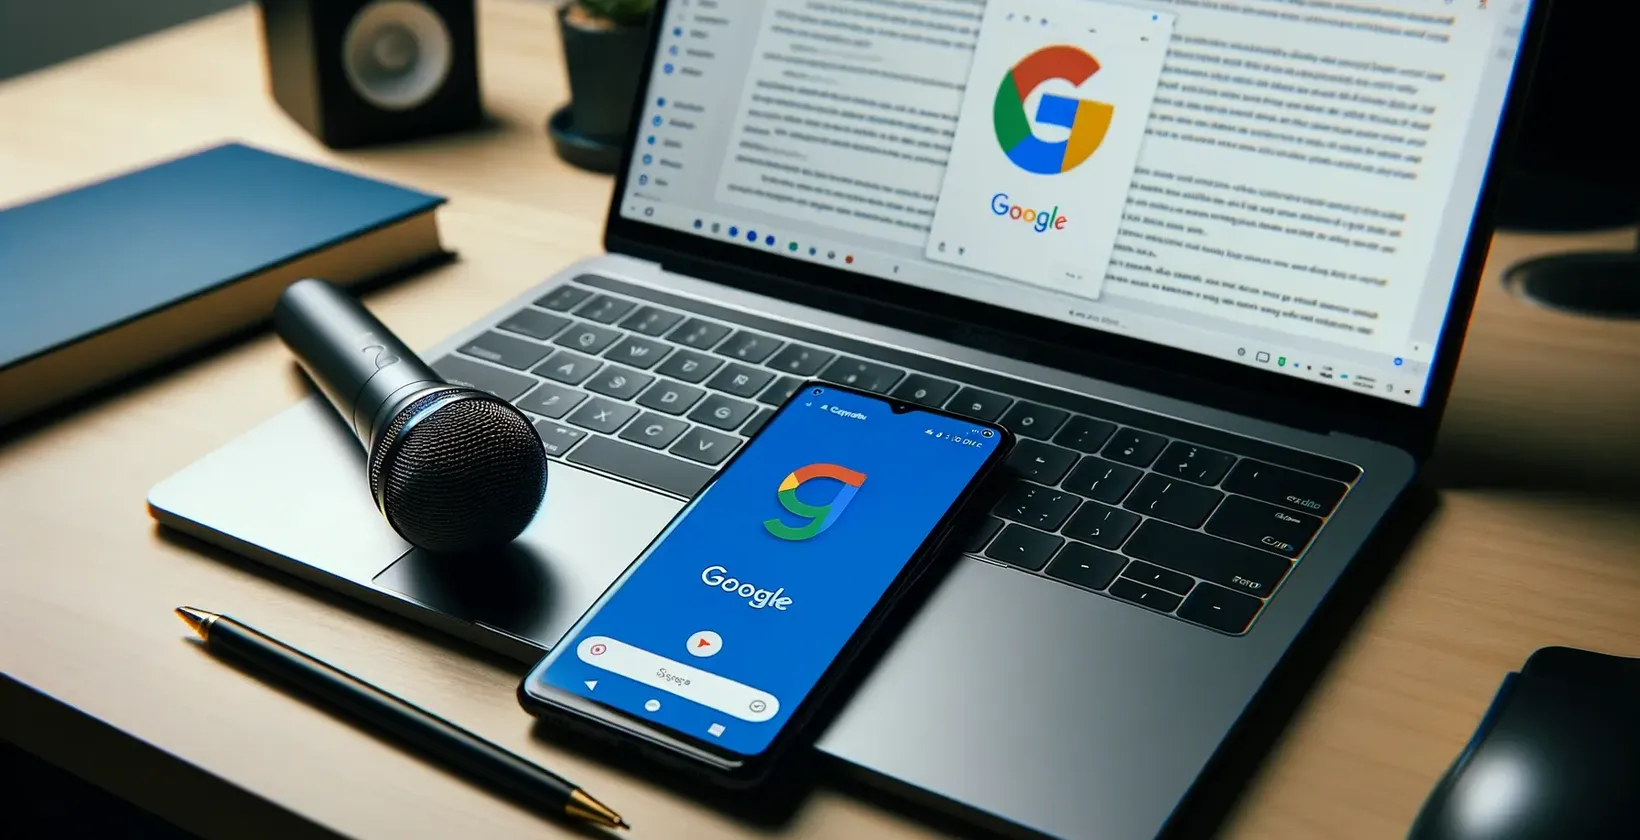 Google gerichte werkruimte met laptop waarop een document staat, smartphone met logo, microfoon op touchpad en een notebook-pen.